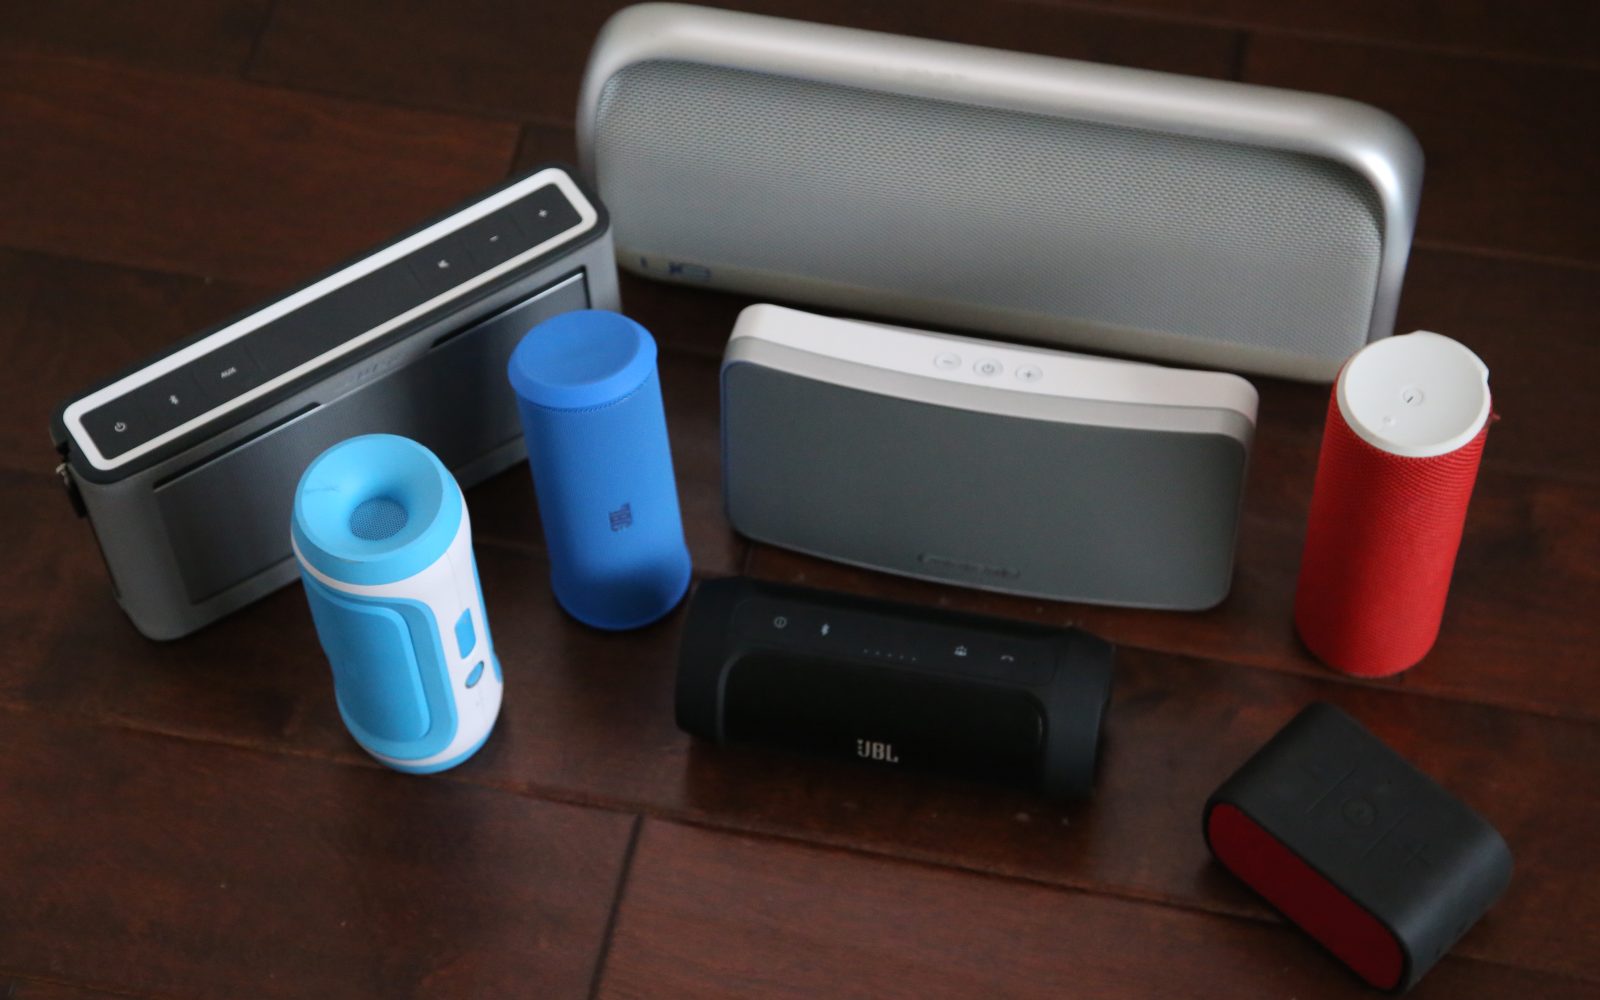 Best Portable speaker brand? We test Sony vs JBL vs Ultimate Ears vs. the rest